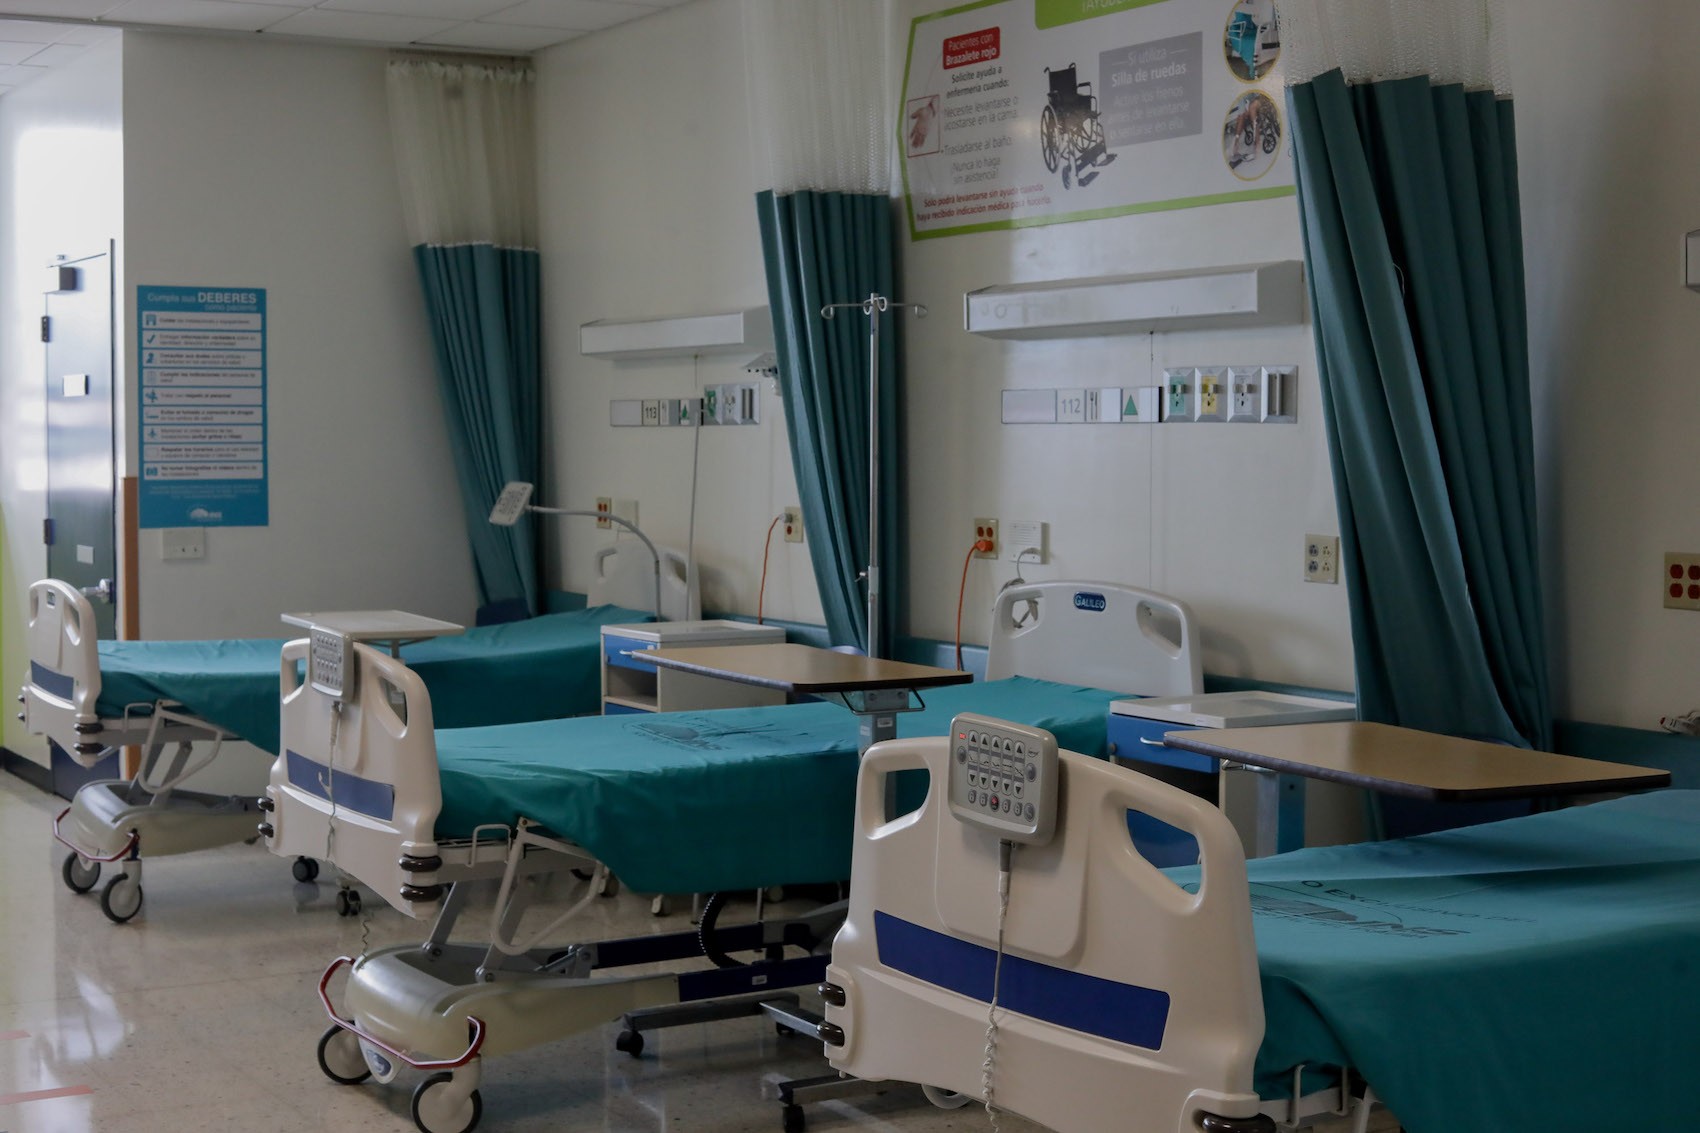 413 hospitalizados por COVID-19 en Costa Rica, el mayor número durante la pandemia